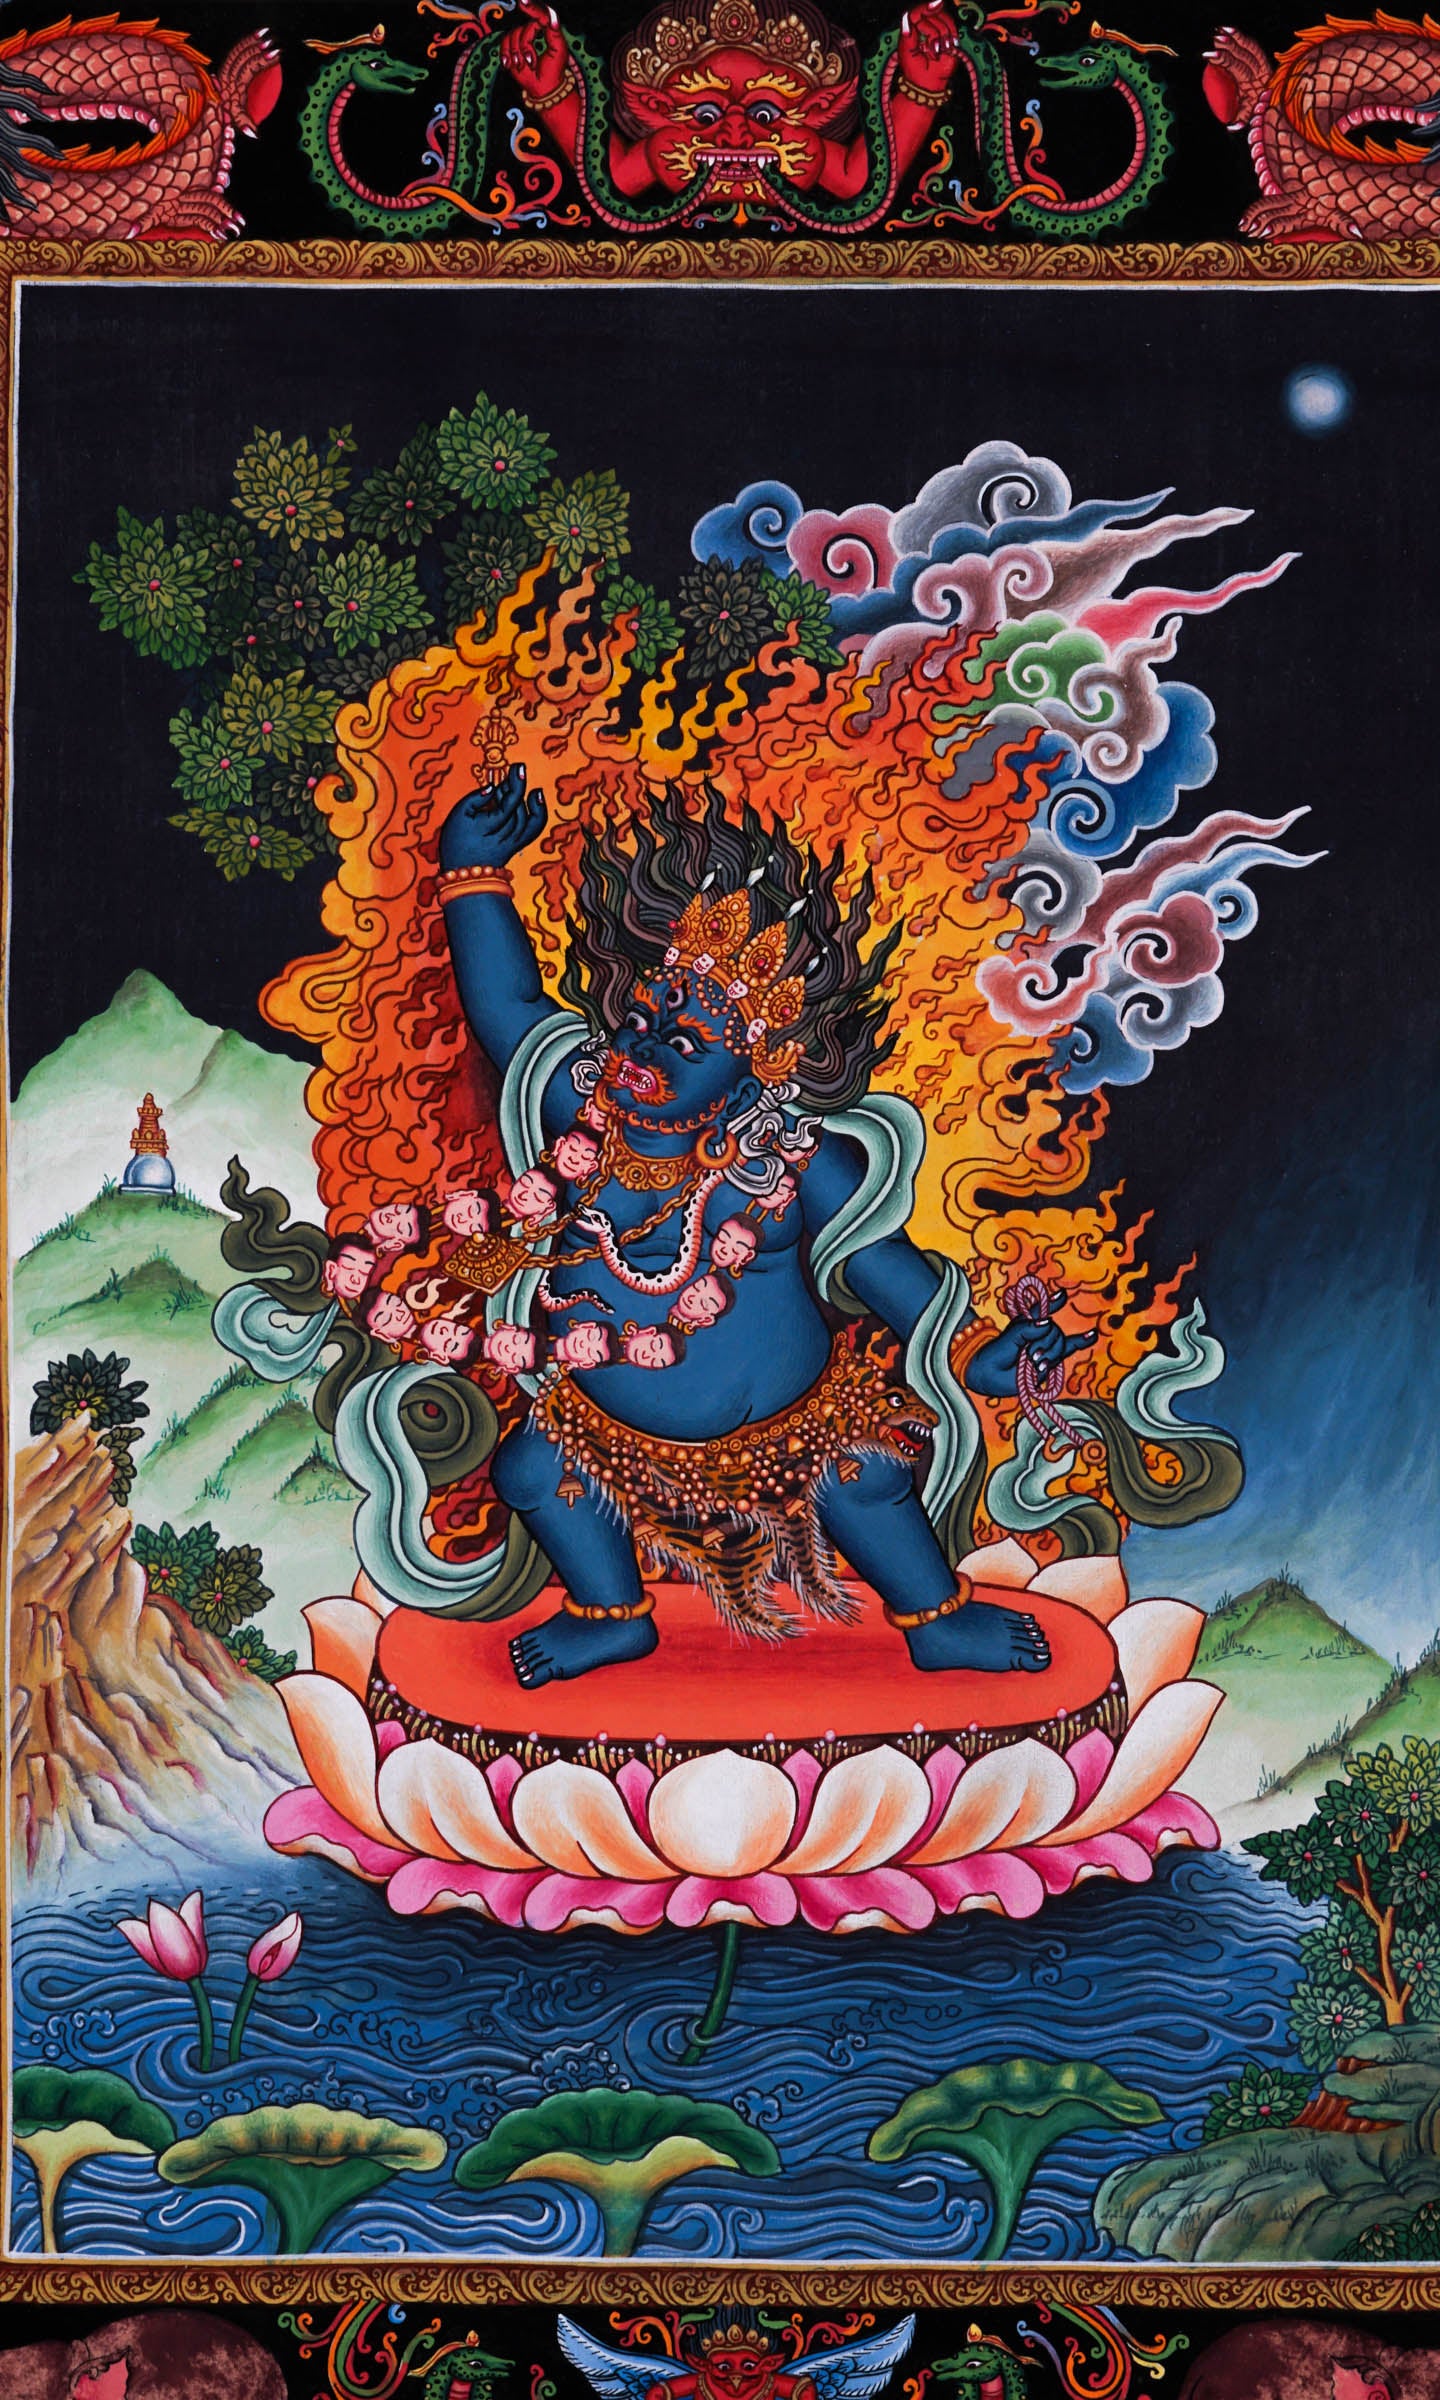 Wrathful deity - Mahakala Thangka - Best handpainted thangka painting - LuckyThanka